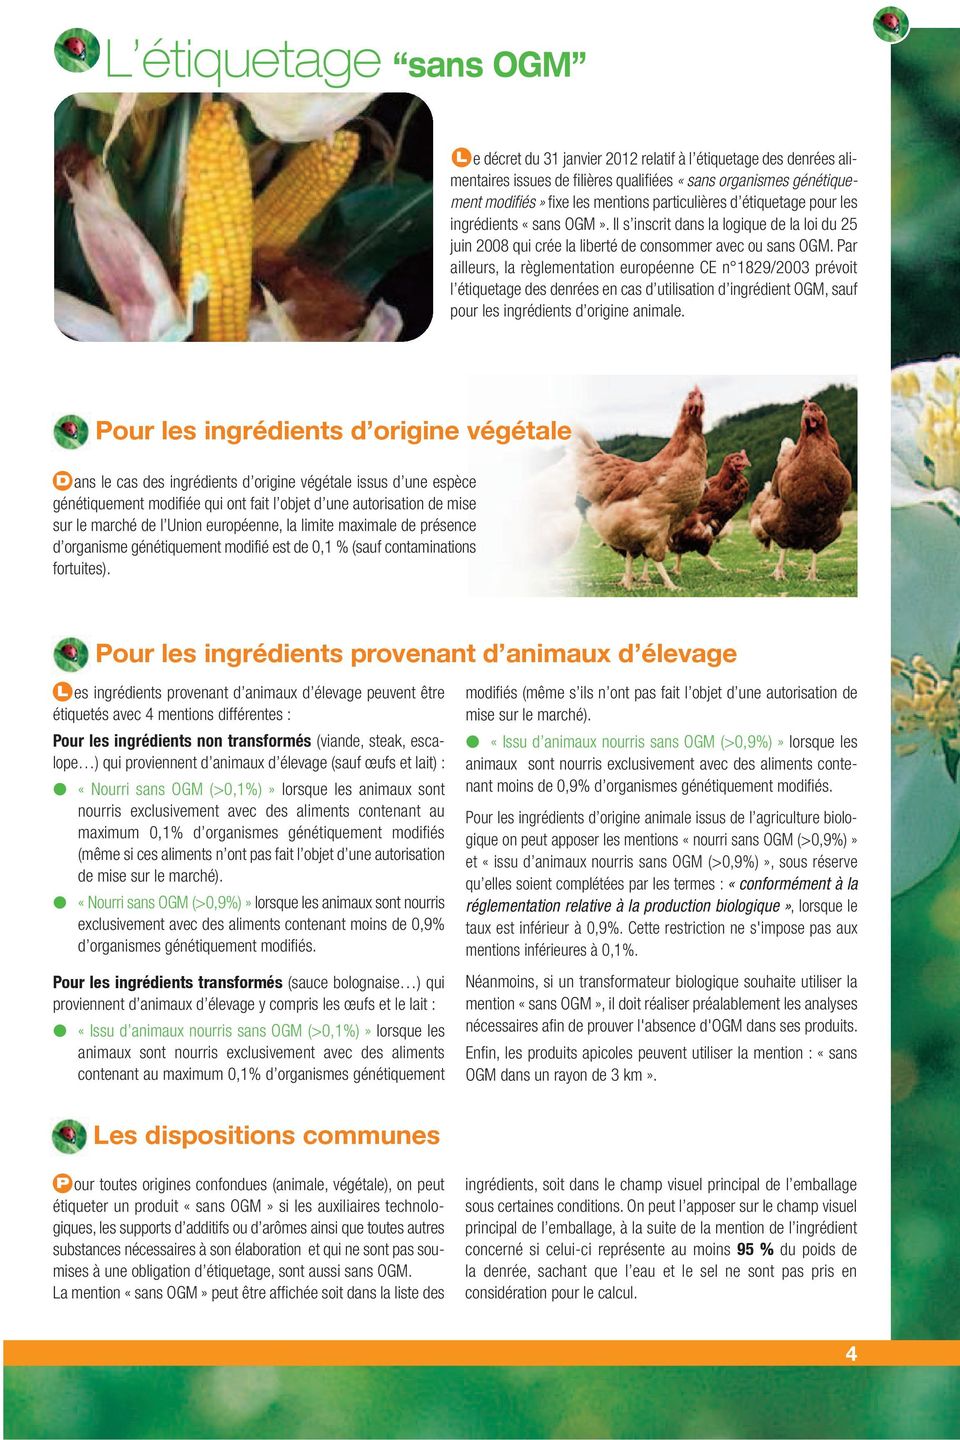 Par ailleurs, la règlementation européenne CE n 1829/2003 prévoit l étiquetage des denrées en cas d utilisation d ingrédient OGM, sauf pour les ingrédients d origine animale.